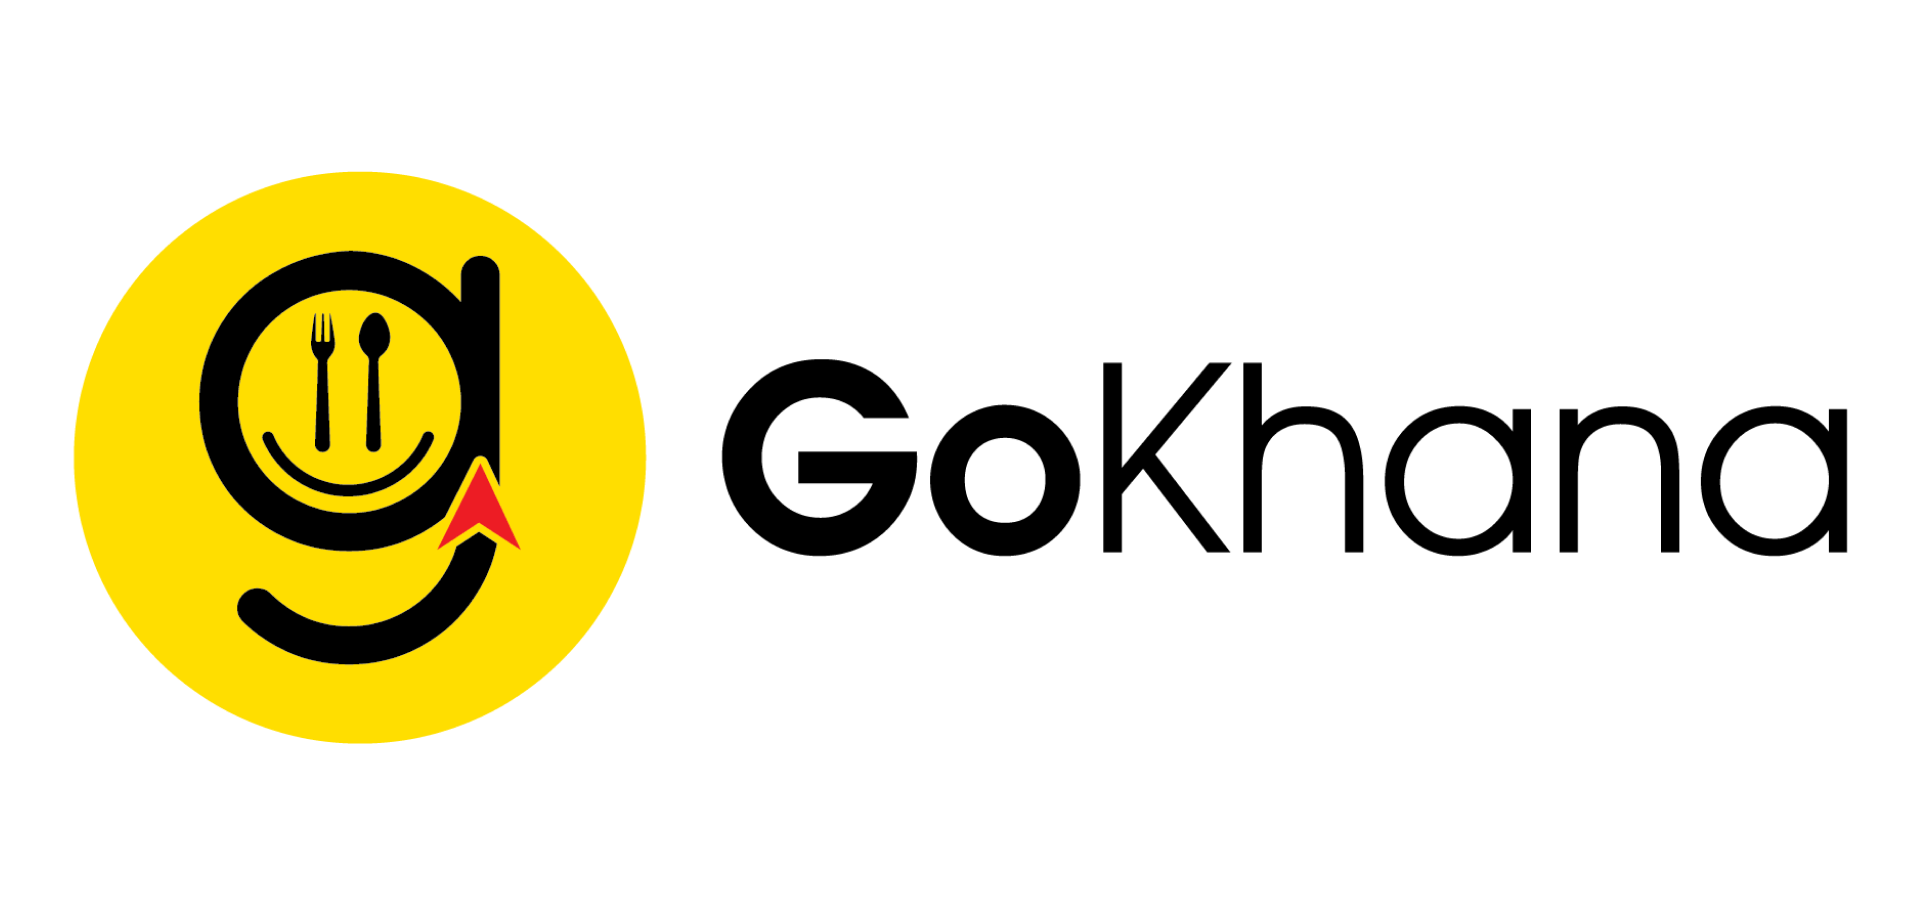 Gokhana